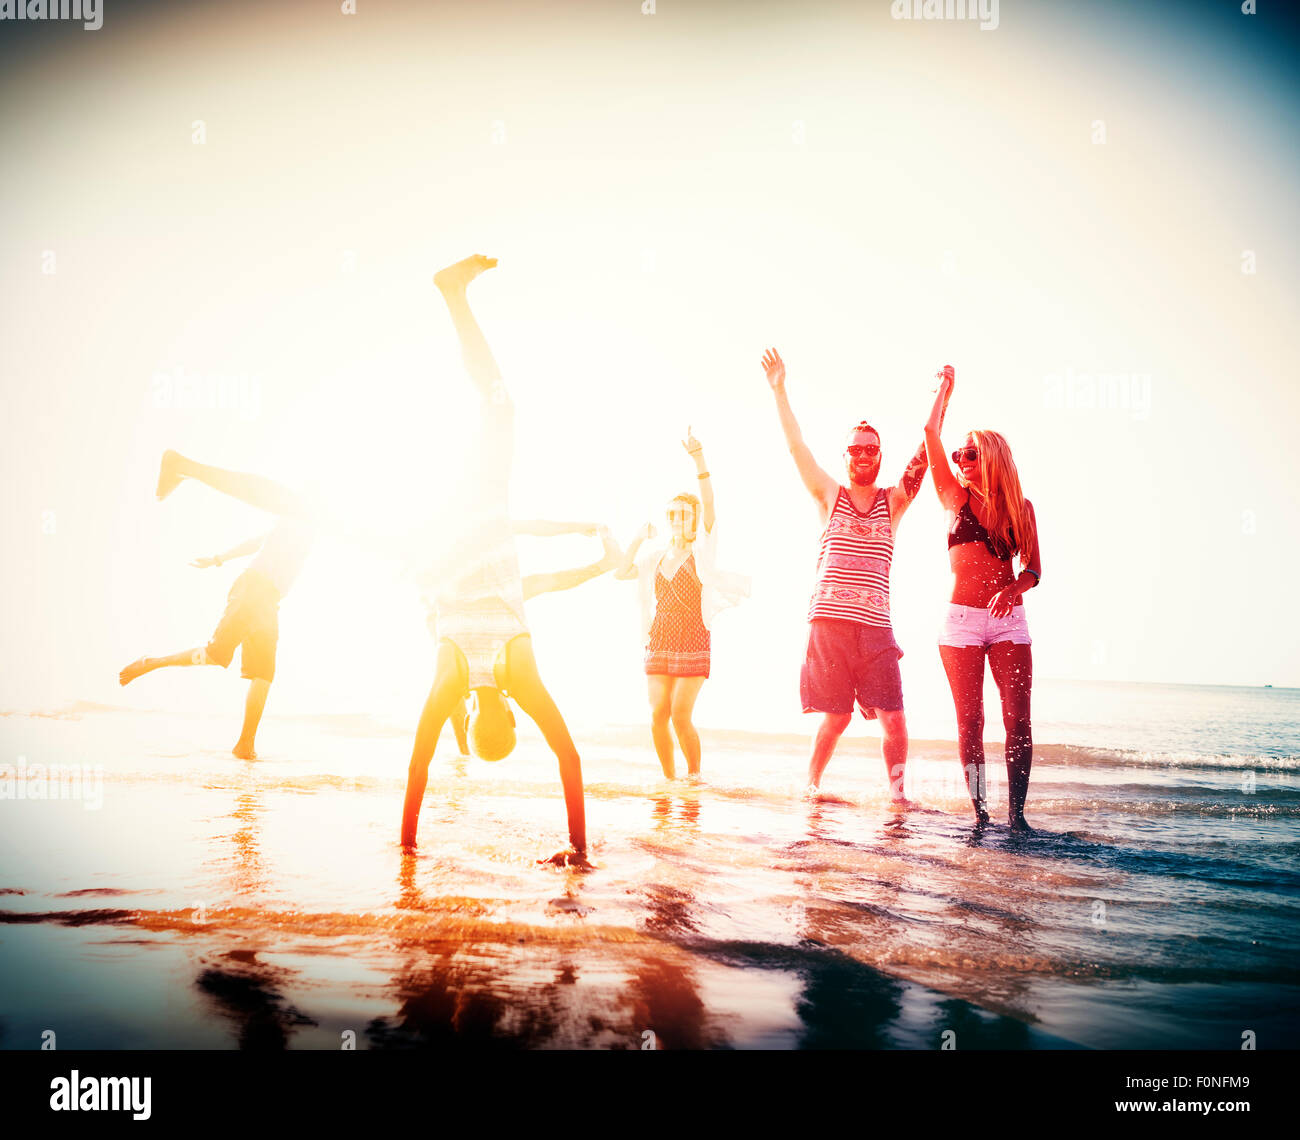 La liberté d'amitié Beach Des vacances Concept Banque D'Images